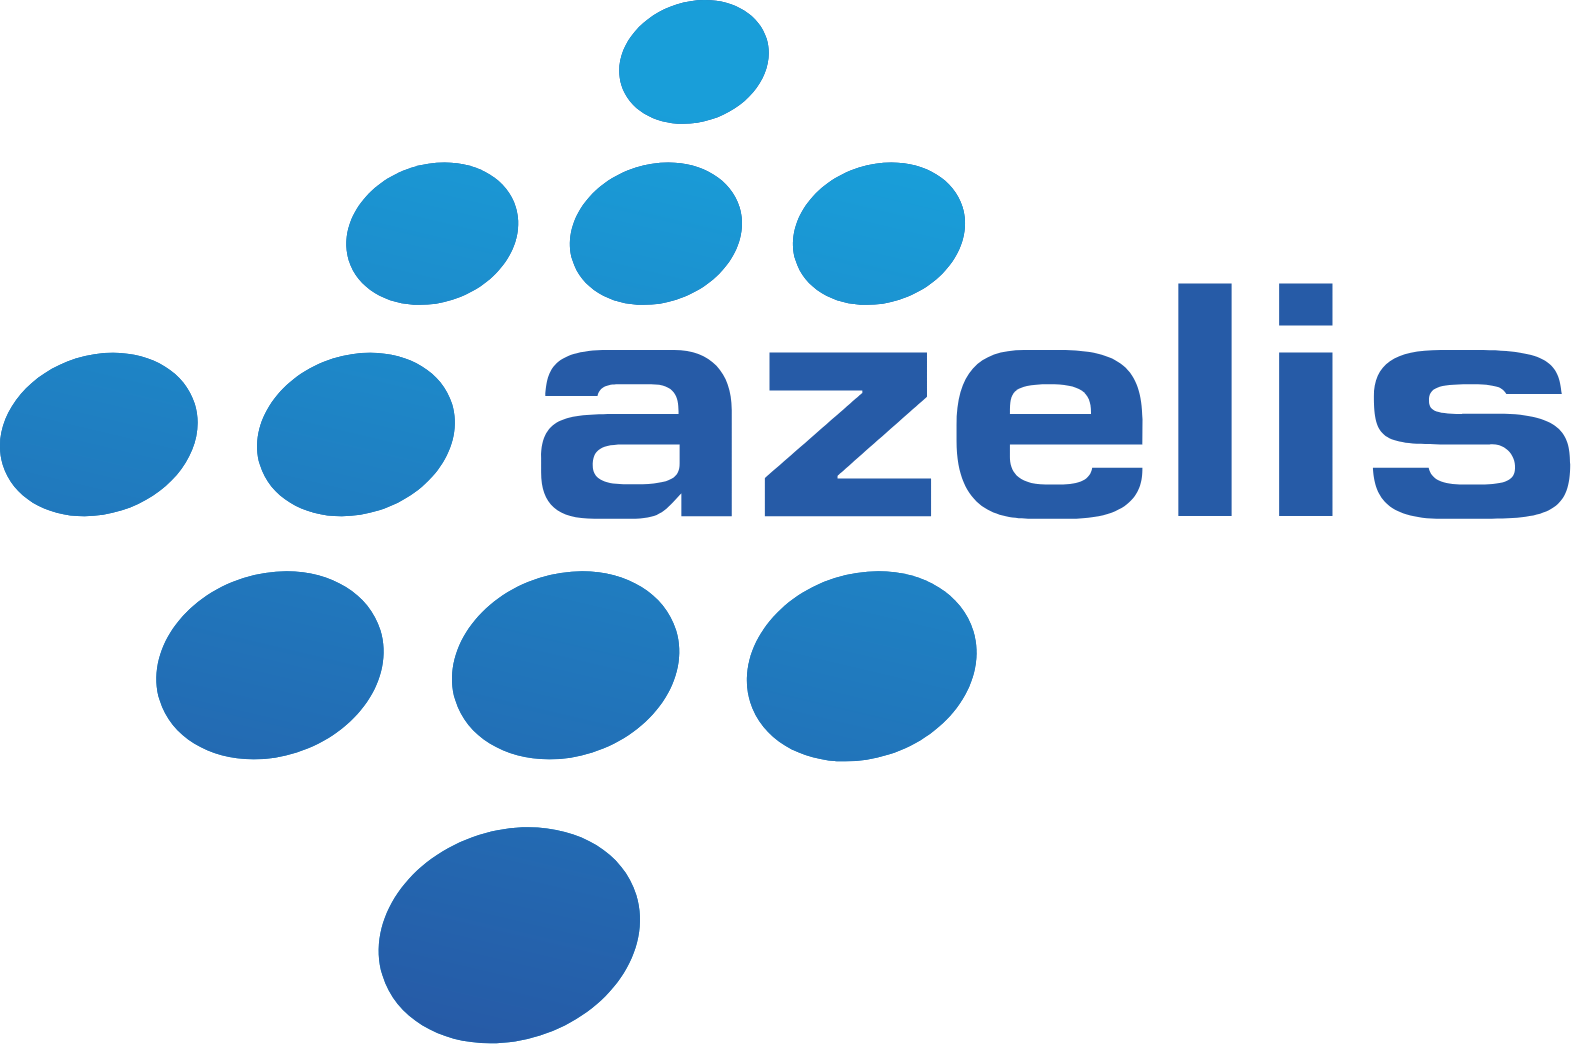 Azelis Group logo (transparent PNG)